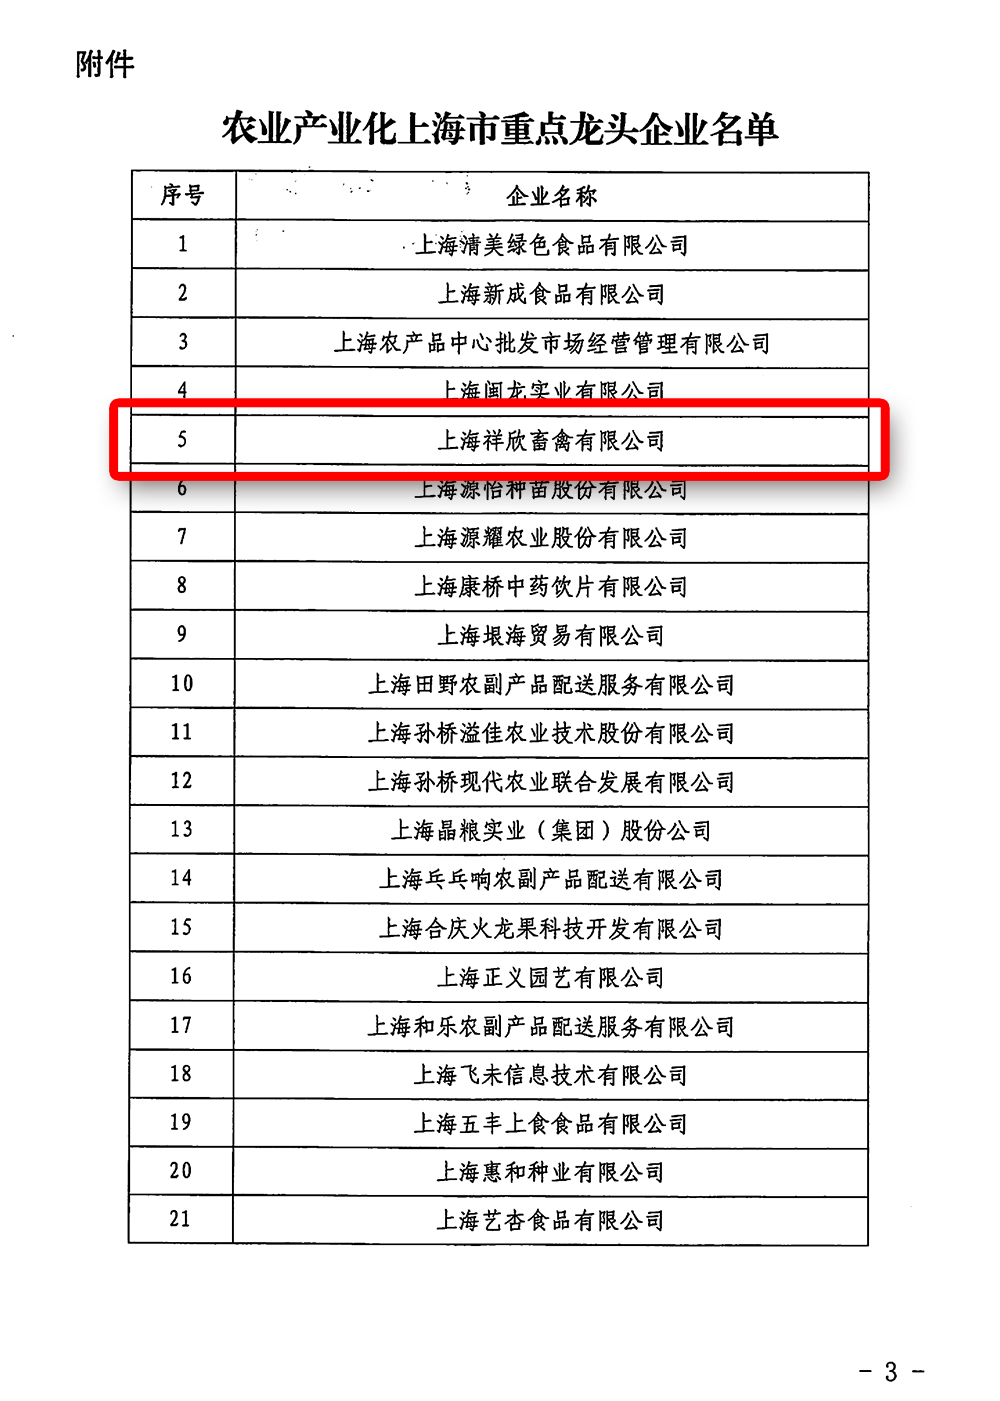 关于公布农业产业化上海市重点龙头企业名单的通知（祥欣）-3.png